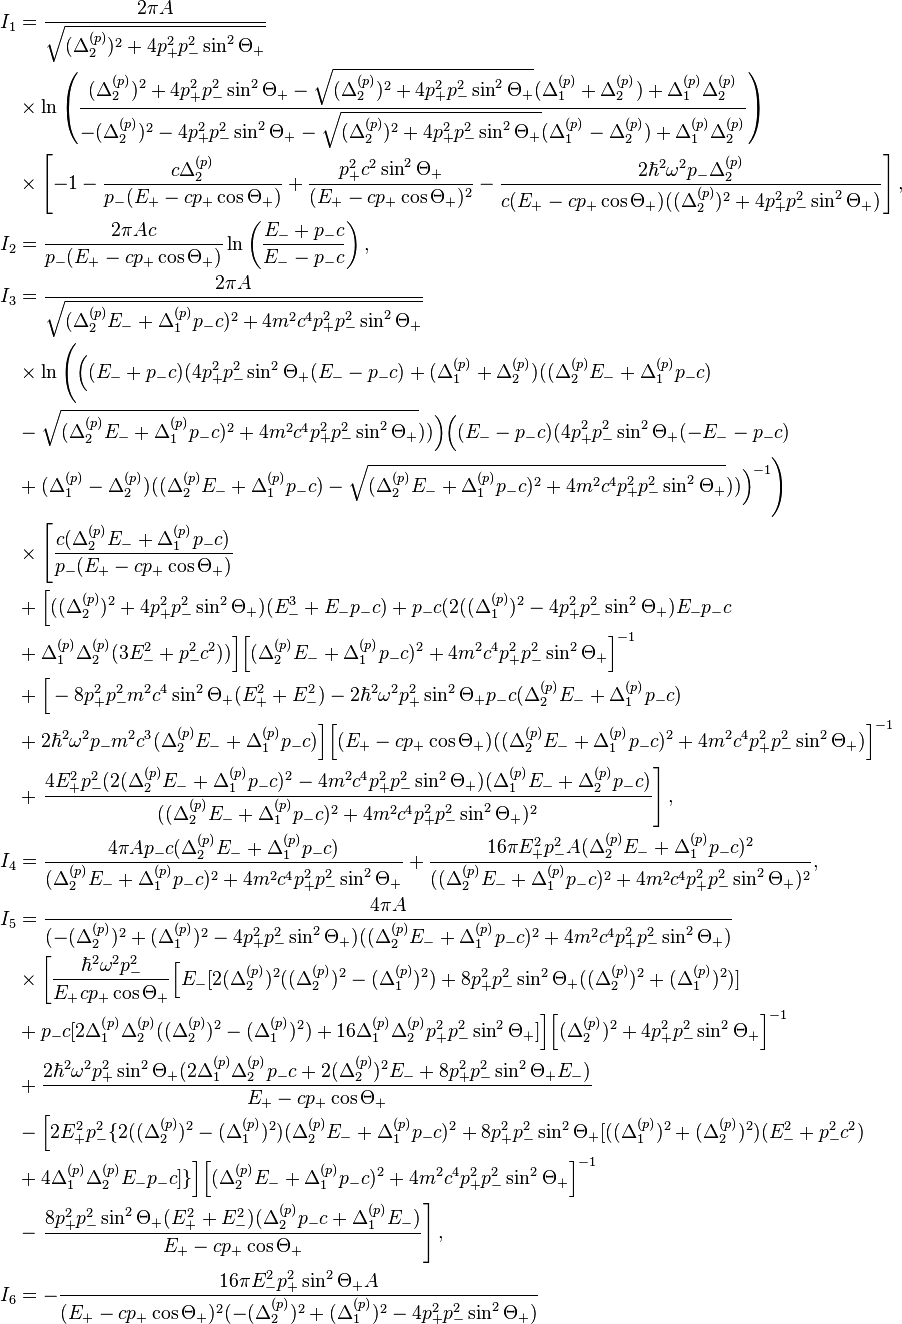 
\begin{align}
I_1&=\frac{2\pi A}{\sqrt{(\Delta^{(p)}_2)^2+4p_+^2p_-^2\sin^2\Theta_+}} \\
&\times
\ln\left(\frac{(\Delta^{(p)}_2)^2+4p_+^2p_-^2\sin^2\Theta_+-\sqrt{(\Delta^{(p)}_2)^2+4p_+^2p_-^2\sin^2
\Theta_+}(\Delta^{(p)}_1+\Delta^{(p)}_2)+\Delta^{(p)}_1\Delta^{(p)}_2}{-(\Delta^{(p)}_2)
^2-4p_+^2p_-^2\sin^2\Theta_+
-\sqrt{(\Delta^{(p)}_2)^2+4p_+^2p_-^2\sin^2 \Theta_+}(\Delta^{(p)}_1-\Delta^{(p)}_2)+\Delta^{(p)}_1\Delta^{(p)}_2
}\right) \\
&\times\left[-1-\frac{c\Delta^{(p)}_2}{p_-(E_+-cp_+\cos\Theta_+)}+\frac{p_+^2c^2\sin^2\Theta_+}
{(E_+-cp_+\cos\Theta_+)^2}-\frac{2\hbar^2\omega^2p_-\Delta^{(p)}_2}{c(E_+-cp_+\cos
\Theta_+)((\Delta^{(p)}_2)^2+4p_+^2p_-^2\sin^2\Theta_+)}\right], \\
I_2&=\frac{2\pi Ac}{p_-(E_+-cp_+\cos\Theta_+)}\ln\left(
\frac{E_-+p_-c}{E_--p_-c}\right), \\
I_3&=\frac{2\pi A}{\sqrt{(\Delta^{(p)}_2E_-+\Delta^{(p)}_1p_-c)^2+4m^2c^4p_+^2p_-^2\sin^2\Theta_+
}}  \\
&\times\ln\Bigg(\Big((E_-+p_-c)(4p_+^2p_-^2\sin^2\Theta_+(E_--p_-c)+(\Delta^{(p)}_1+\Delta^{(p)}_2)
((\Delta^{(p)}_2E_-+\Delta^{(p)}_1p_-c) \\
&-\sqrt{(\Delta^{(p)}_2E_-+\Delta^{(p)}_1p_-c)^2+4m^2c^4p_+^2p_-^2\sin^2\Theta_+}))\Big)\Big((E_--p_-c)
(4p_+^2p_-^2\sin^2\Theta_+(-E_--p_-c) \\
&+(\Delta^{(p)}_1-\Delta^{(p)}_2)
((\Delta^{(p)}_2E_-+\Delta^{(p)}_1p_-c)-\sqrt{(\Delta^{(p)}_2E_-+\Delta^{(p)}_1p_-c)^2+4m^2c^4p_+^2p_-^2\sin^2\Theta_+}))\Big)^{-1}\Bigg)  \\
&\times\left[\frac{c(\Delta^{(p)}_2E_-+\Delta^{(p)}_1p_-c)}{p_-(E_+-cp_+\cos\Theta_+)}\right.\\
&+\Big[((\Delta^{(p)}_2)^2+4p_+^2p_-^2\sin^2\Theta_+)(E_-^3+E_-p_-c)+p_-c(2
((\Delta^{(p)}_1)^2-4p_+^2p_-^2\sin^2\Theta_+)E_-p_-c \\
&+\Delta^{(p)}_1\Delta^{(p)}_2(3E_-^2+p_-^2c^2))\Big]\Big[(\Delta^{(p)}_2E_-+\Delta^{(p)}_1p_-c)^2+4m^2c^4p_+^2p_-^2\sin^2\Theta_+\Big]^{-1} \\
&+\Big[-8p_+^2p_-^2m^2c^4\sin^2\Theta_+(E_+^2+E_-^2)-2\hbar^2\omega^2p_+^2\sin^2\Theta_+p_-c(\Delta^{(p)}_2E_-+\Delta^{(p)}_1p_-c) \\
&+2\hbar^2\omega^2p_- m^2c^3(\Delta^{(p)}_2E_-+\Delta^{(p)}_1p_-c)\Big]
\Big[(E_+-cp_+\cos\Theta_+)((\Delta^{(p)}_2E_-+\Delta^{(p)}_1p_-c)^2+4m^2c^4p_+^2p_-^2\sin^2\Theta_+)\Big]^{-1} \\
&+\left.\frac{4E_+^2p_-^2(2(\Delta^{(p)}_2E_-+\Delta^{(p)}_1p_-c)^2-4m^2c^4p_+^2p_-^2\sin^2\Theta_+)(\Delta^{(p)}_1E_-+\Delta^{(p)}_2p_-c)}{((\Delta^{(p)}_2E_-+\Delta^{(p)}_1p_-c)^2+4m^2c^4p_+^2p_-^2\sin^2\Theta_+)^2}\right], \\
I_4&=\frac{4\pi Ap_-c(\Delta^{(p)}_2E_-+\Delta^{(p)}_1p_-c)}{(\Delta^{(p)}_2E_-+\Delta^{(p)}_1p_-c)^2+4m^2c^4p_+^2p_-^2\sin^2\Theta_+}+\frac{16\pi E_+^2p_-^2
A(\Delta^{(p)}_2E_-+\Delta^{(p)}_1p_-c)^2}{((\Delta^{(p)}_2E_-+\Delta^{(p)}_1p_-c)^2+4m^2c^4p_+^2p_-^2\sin^2\Theta_+)^2}, \\
I_5&=\frac{4\pi A}{(-(\Delta^{(p)}_2)^2+(\Delta^{(p)}_1)^2-4p_+^2p_-^2\sin^2\Theta_+)
((\Delta^{(p)}_2E_-+\Delta^{(p)}_1p_-c)^2+4m^2c^4p_+^2p_-^2\sin^2\Theta_+)} \\
&\times\left[\frac{\hbar^2\omega^2p_-^2}{E_+cp_+\cos\Theta_+}
\Big[E_-[2(\Delta^{(p)}_2)^2((\Delta^{(p)}_2)^2-(\Delta^{(p)}_1)^2)+8p_+^2p_-^2\sin^2\Theta_+((\Delta^{(p)}_2)^2+(\Delta^{(p)}_1)^2)]
\right.\\
&+p_-c[2\Delta^{(p)}_1\Delta^{(p)}_2((\Delta^{(p)}_2)^2-(\Delta^{(p)}_1)^2)+16\Delta^{(p)}_1\Delta^{(p)}_2p_+^2p_-^2\sin^2\Theta_+]\Big]\Big[(\Delta^{(p)}_2)^2+4p_+^2p_-^2\sin^2\Theta_+\Big]^{-1}\\
&+ \frac{2\hbar^2\omega^2 p_{+}^2 \sin^2\Theta_+(2\Delta^{(p)}_1\Delta^{(p)}_2
p_-c+2(\Delta^{(p)}_2)^2E_-+8p_+^2p_-^2\sin^2\Theta_+ E_-)}{E_+-cp_+\cos\Theta_+}\\
&-\Big[2E_+^2p_-^2\{2((\Delta^{(p)}_2)^2-(\Delta^{(p)}_1)^2)(\Delta^{(p)}_2E_-+\Delta^{(p)}_1p_-c)^2
+8p_+^2p_-^2\sin^2\Theta_+[((\Delta^{(p)}_1)^2+(\Delta^{(p)}_2)^2)(E_-^2+p_-^2c^2)\\
&+4\Delta^{(p)}_1\Delta^{(p)}_2E_-p_-c]\}\Big]\Big[(\Delta^{(p)}_2E_-+\Delta^{(p)}_1p_-c)^2+4m^2c^4p_+^2p_-^2\sin^2\Theta_+\Big]^{-1}\\
&-\left.\frac{8p_+^2p_-^2\sin^2\Theta_+(E_+^2+E_-^2)(\Delta^{(p)}_2p_-c +\Delta^{(p)}_1
E_-)}{E_+-cp_+\cos\Theta_+}\right], \\
I_6&=-\frac{16\pi E_-^2p_+^2\sin^2\Theta_+ A}{(E_+-cp_+\cos\Theta_+)^2
(-(\Delta^{(p)}_2)^2+(\Delta^{(p)}_1)^2-4p_+^2p_-^2\sin^2\Theta_+)} 
\end{align}
